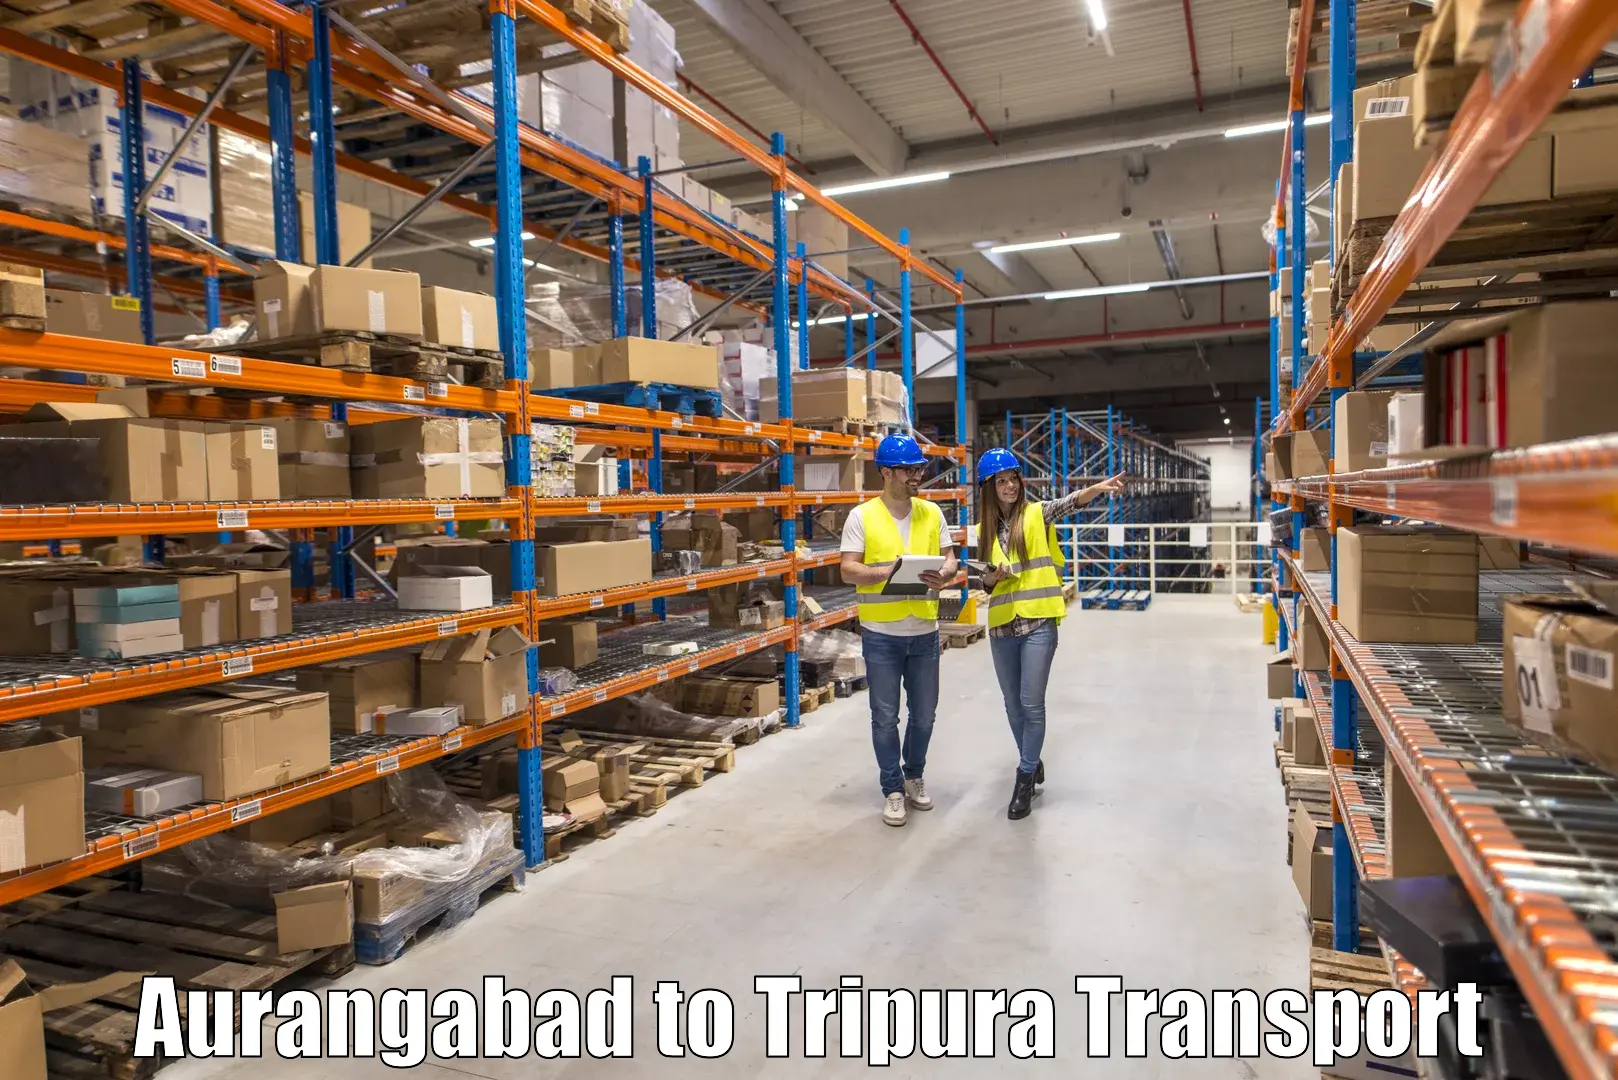 Land transport services Aurangabad to Manughat